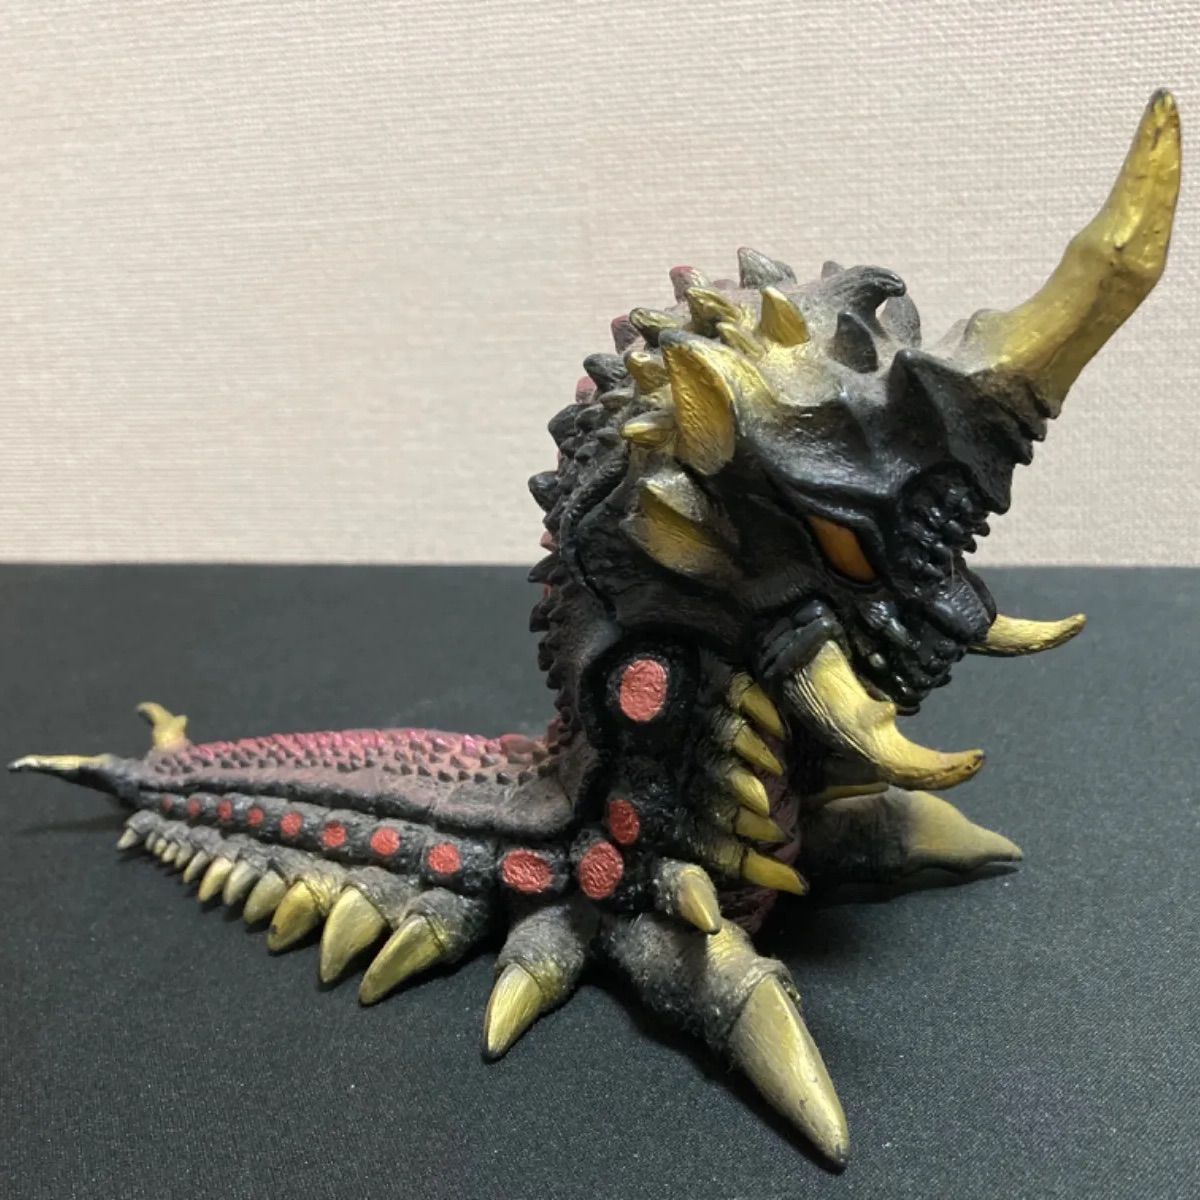 バトラ(幼虫) 「ゴジラVSモスラ」 世紀の大怪獣シリーズ ソフビフィギュア素人保管の中古商品です